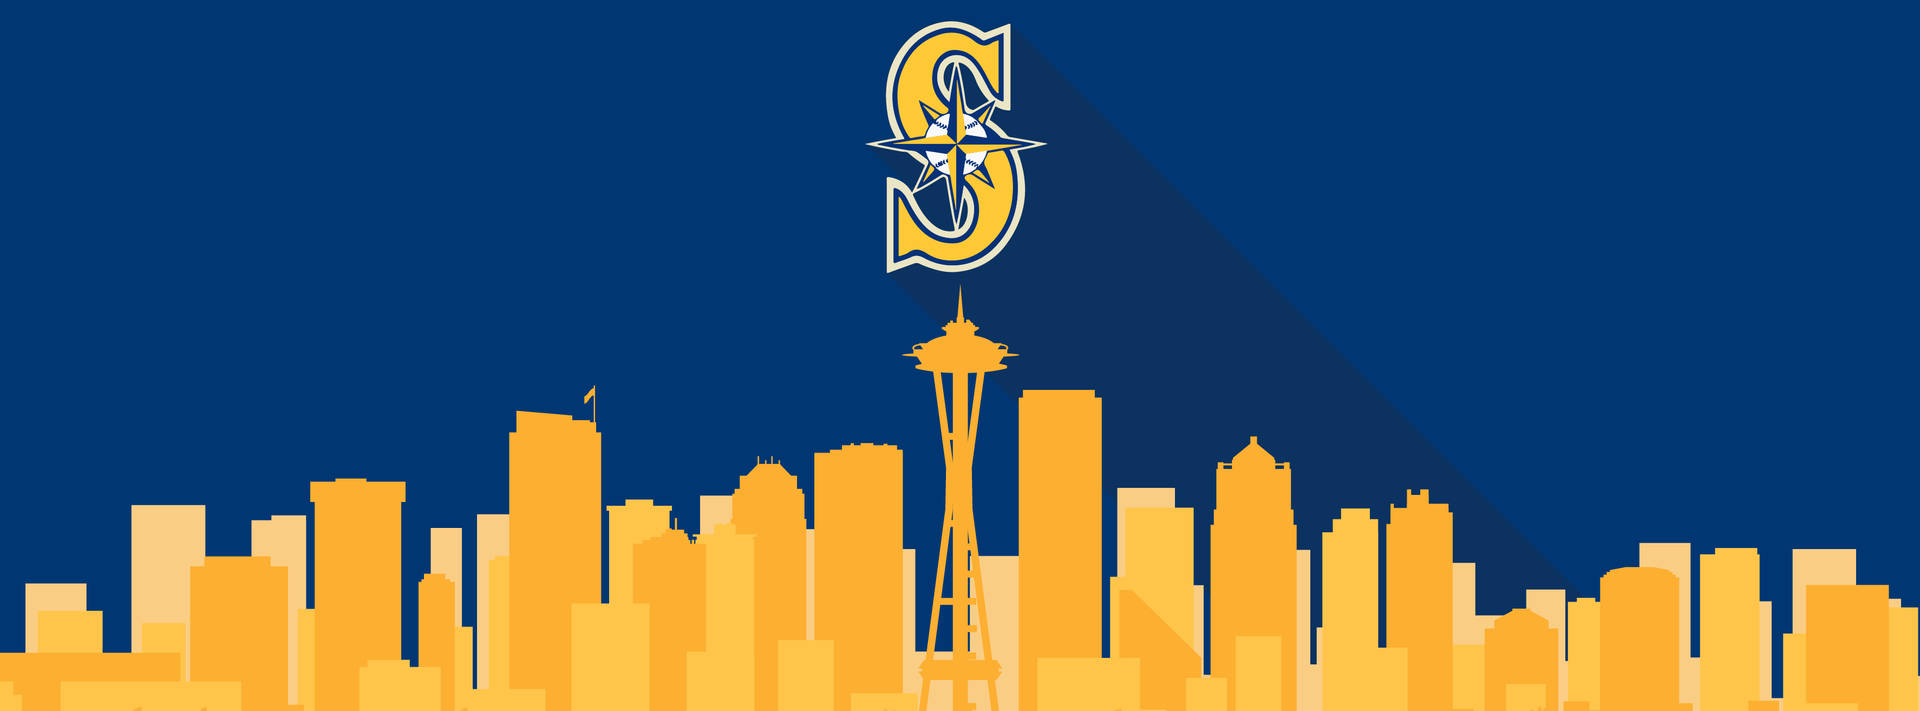 Artedigital De La Ciudad De Los Seattle Mariners. Fondo de pantalla